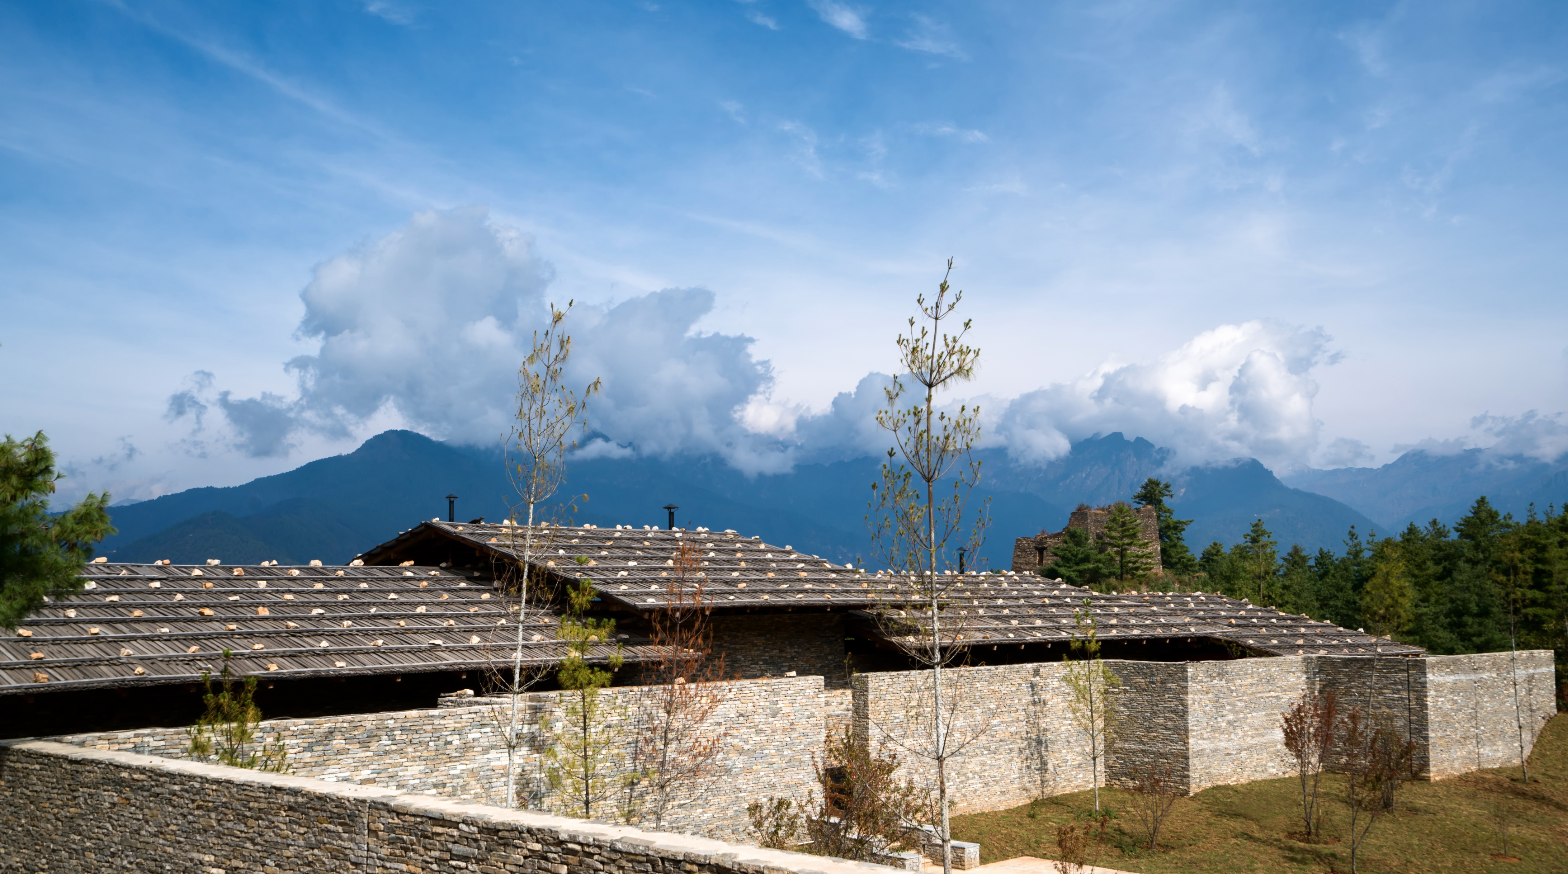 【環球酒店設計精選】讓你遠離繁囂 不丹最新度假酒店Six Senses Bhutan